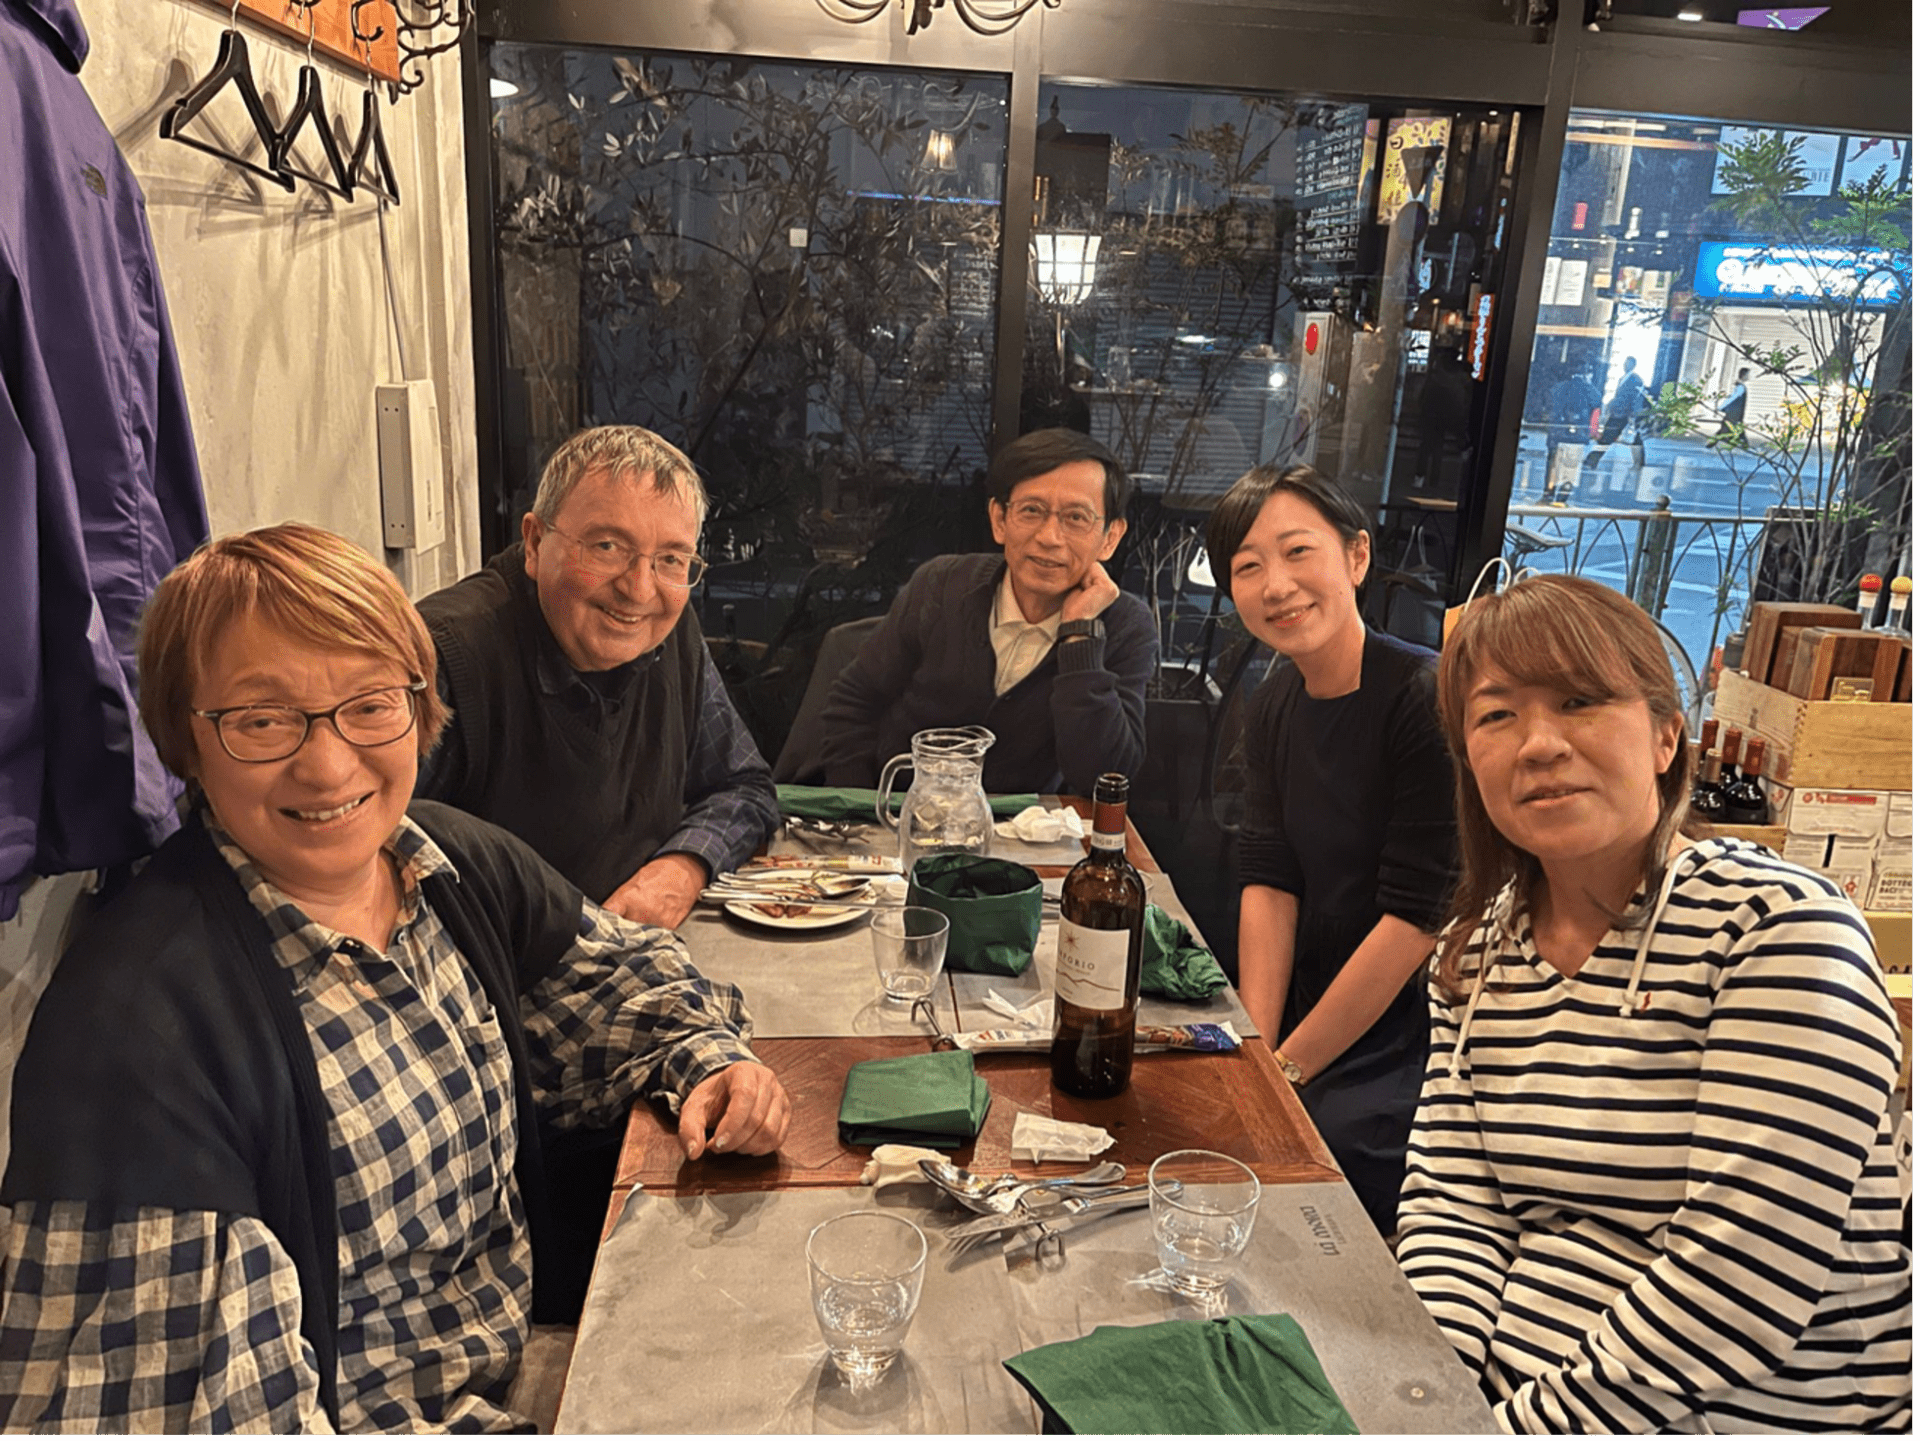 From left to right: Junko, Armin, Haruo Kuzobono, Maho Morimoto, Motoko Katayama